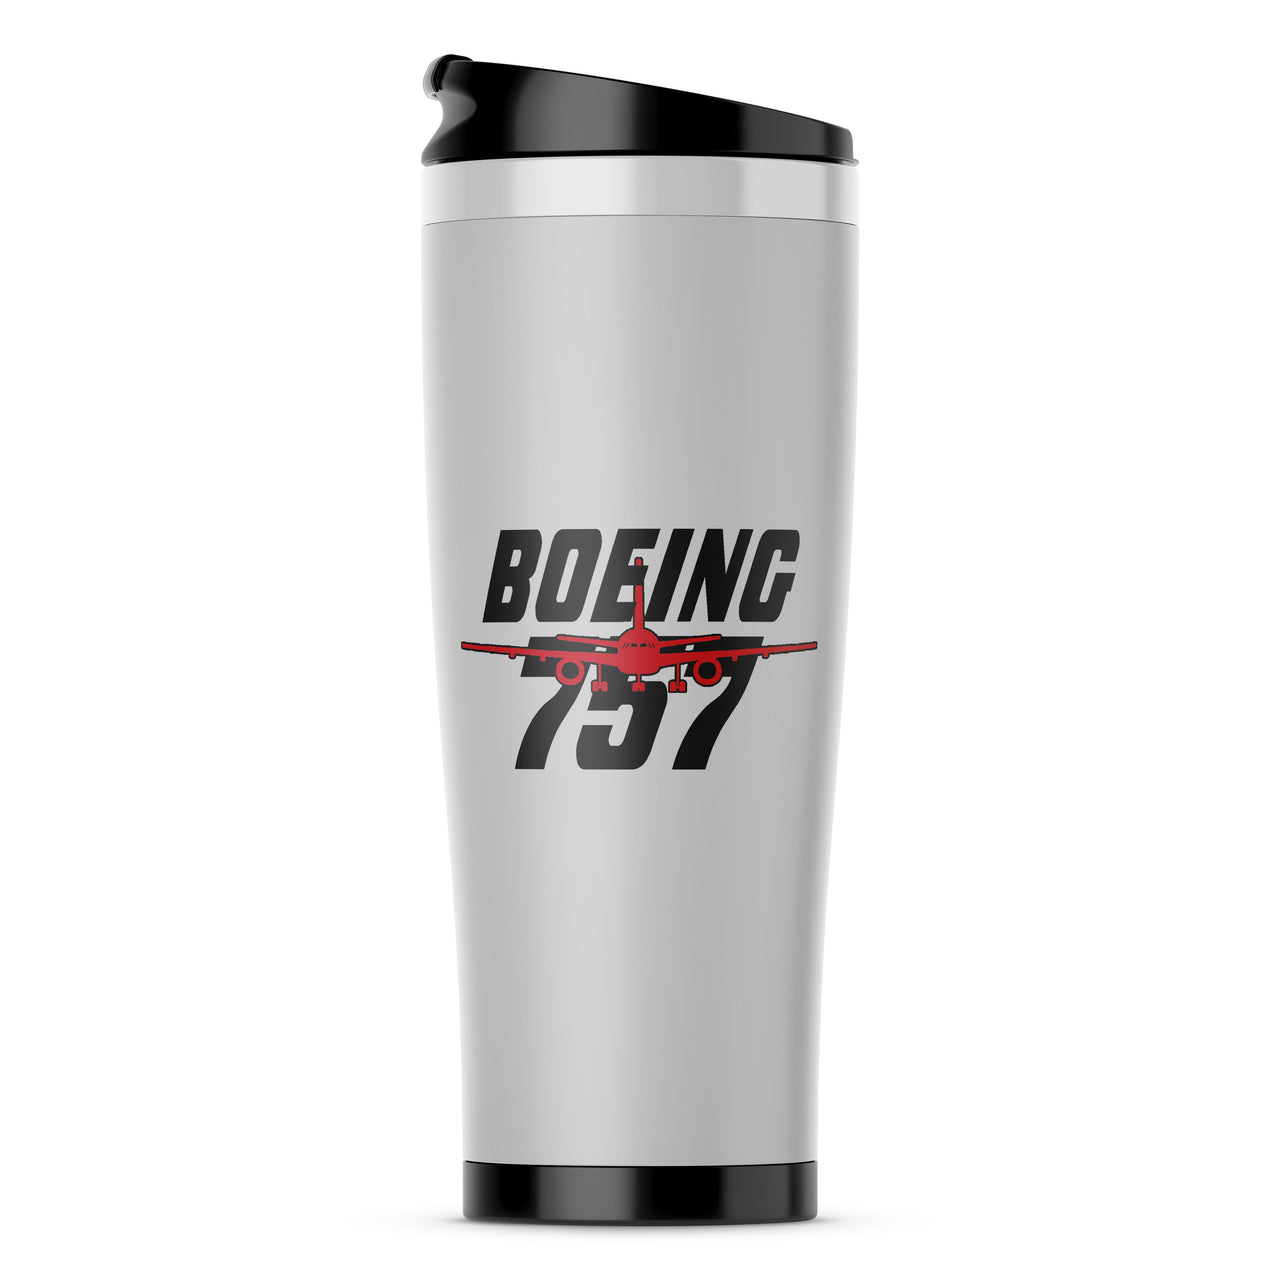 Amazing Boeing 757 Designed Travel Mugs